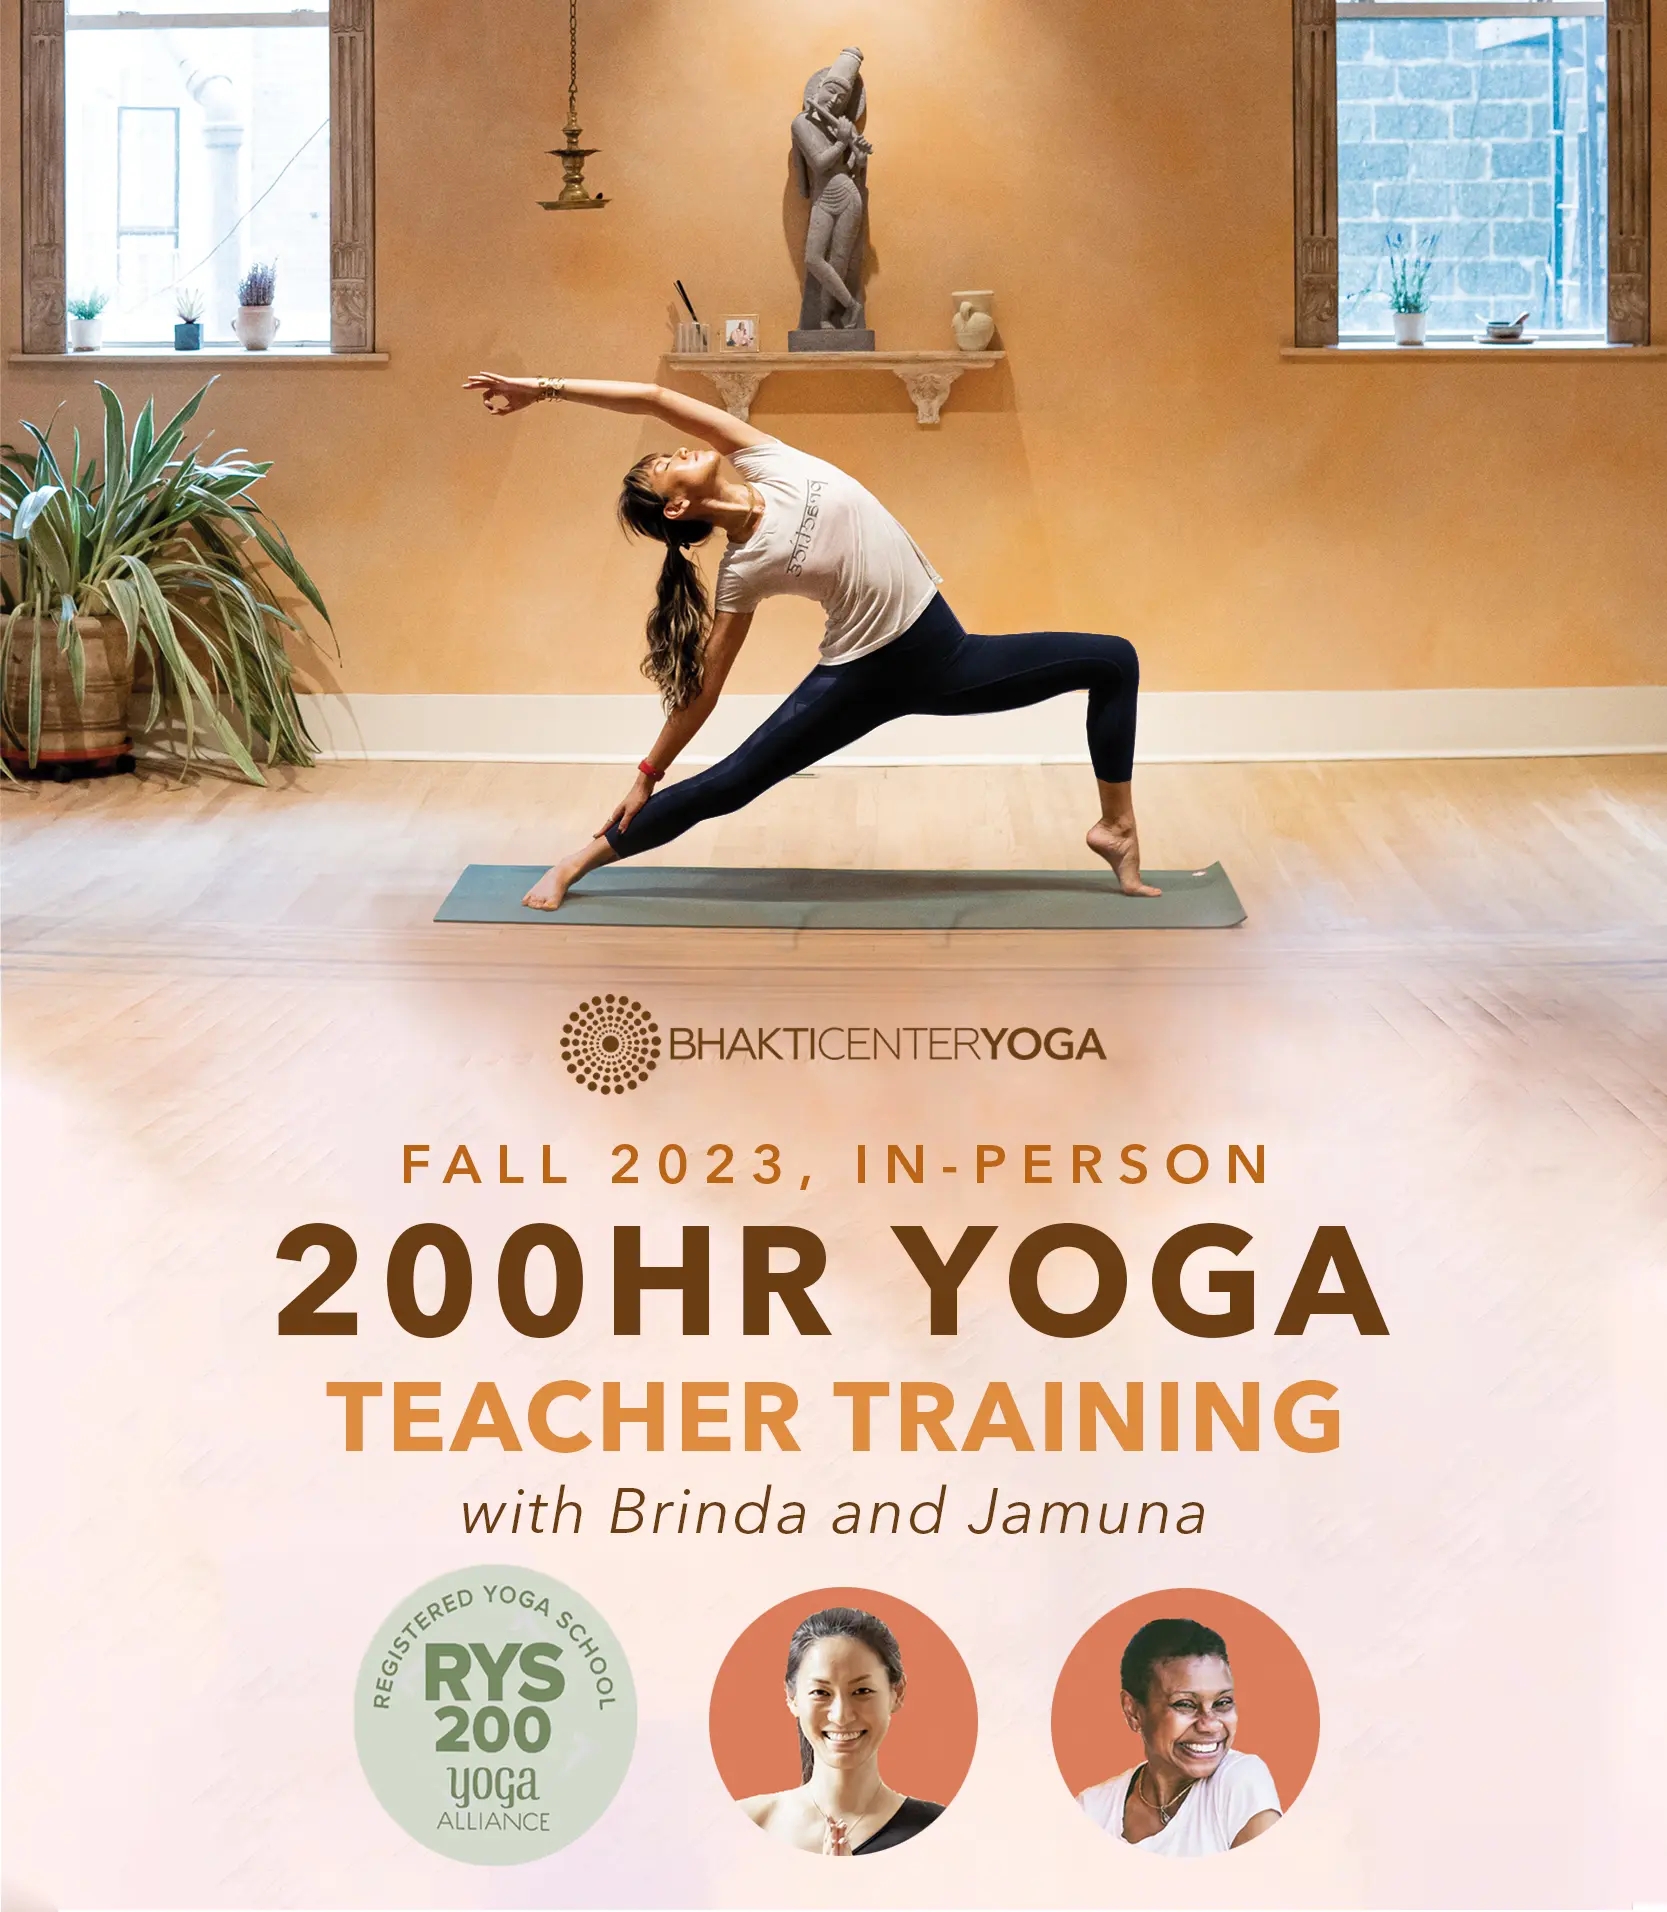 yoga teacher training yoga alliance - Can you teach yoga without Yoga Alliance